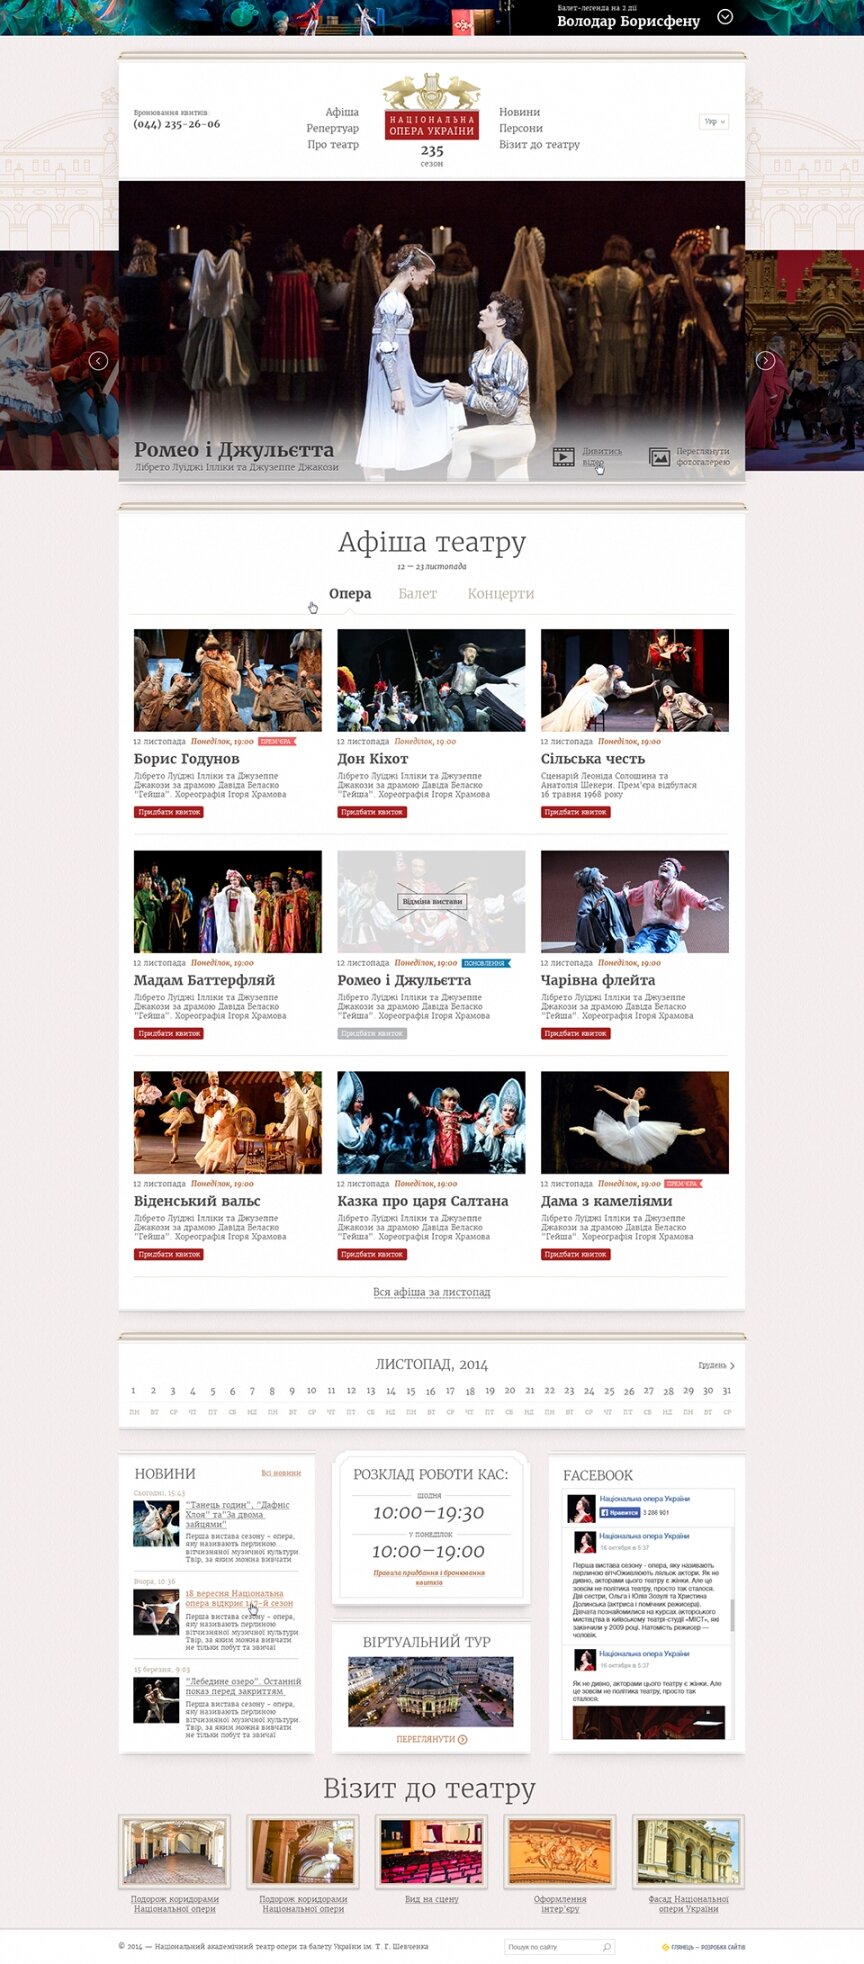 дизайн внутрішніх сторінкок на тему Мистецтво, література, фото, кіно — Національна опера України 0